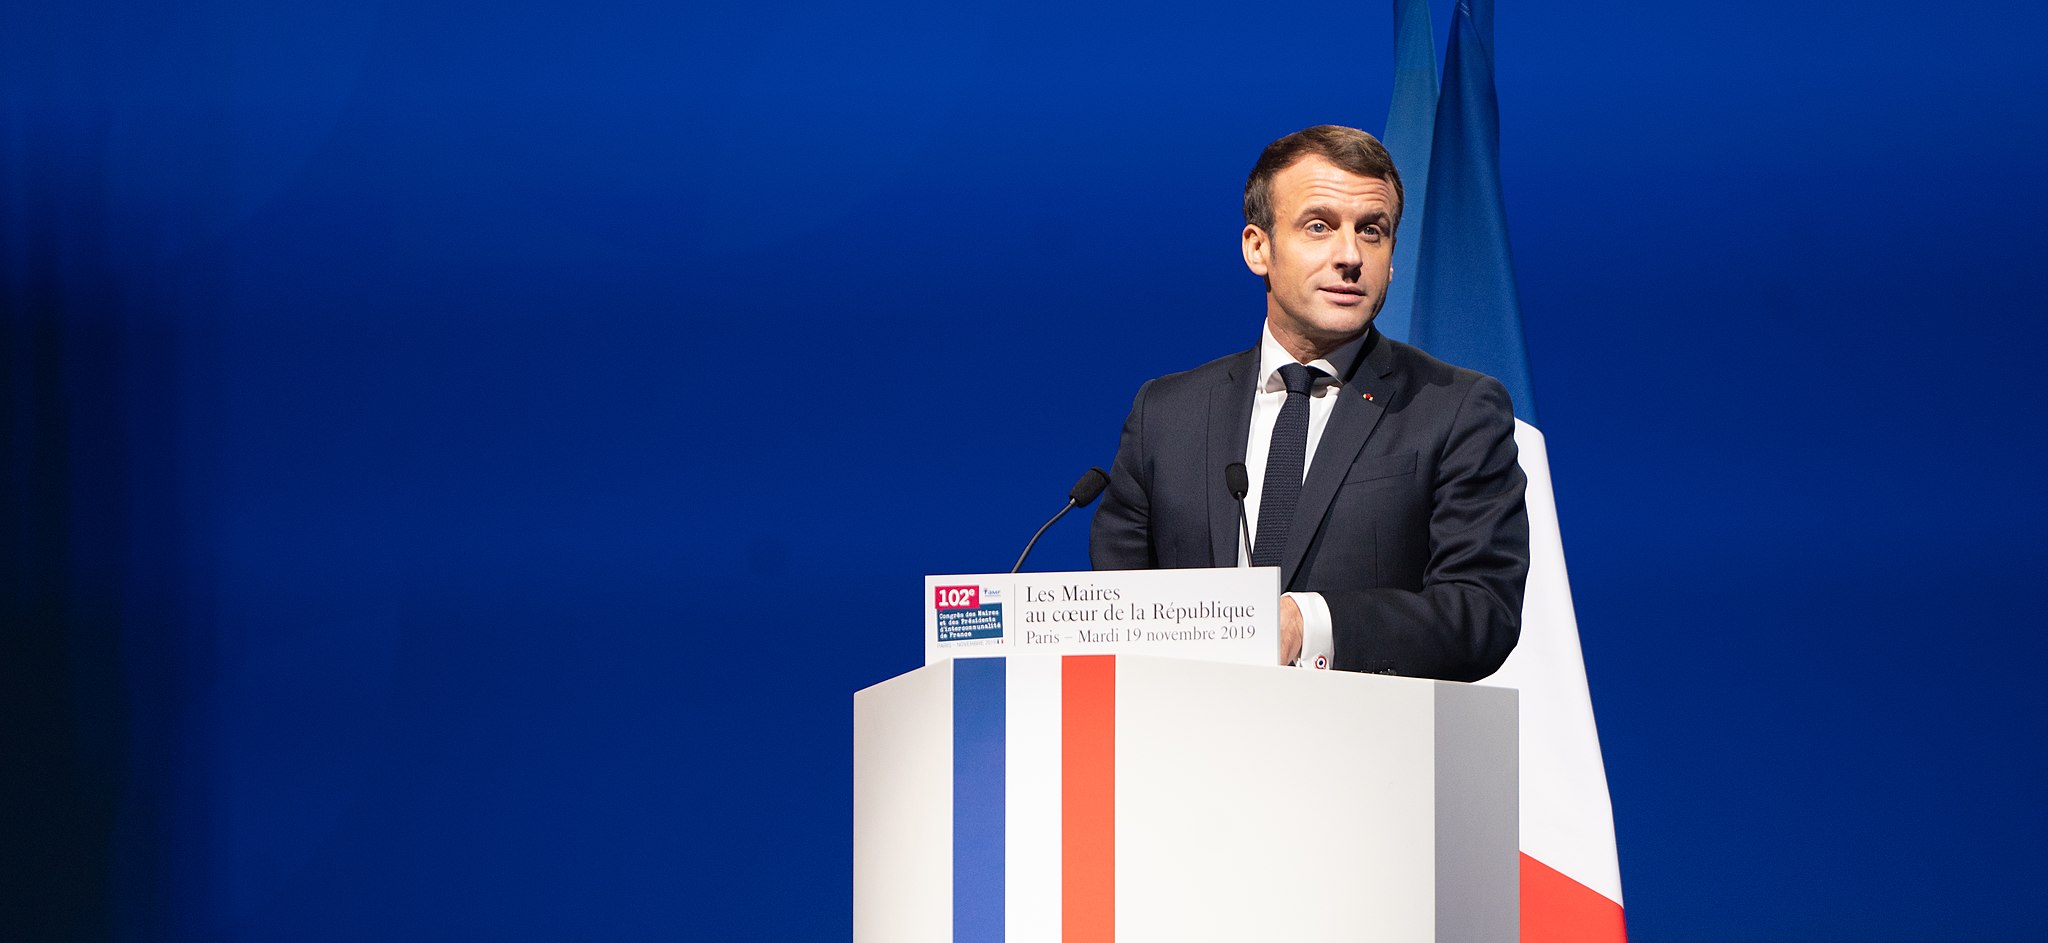 Bild: Jacques Paquier, Emmanuel Macron, Congrès des maires 19 novembre 2019, CC BY 2.0, via Wikimedia Commons (keine Änderungen vorgenommen)